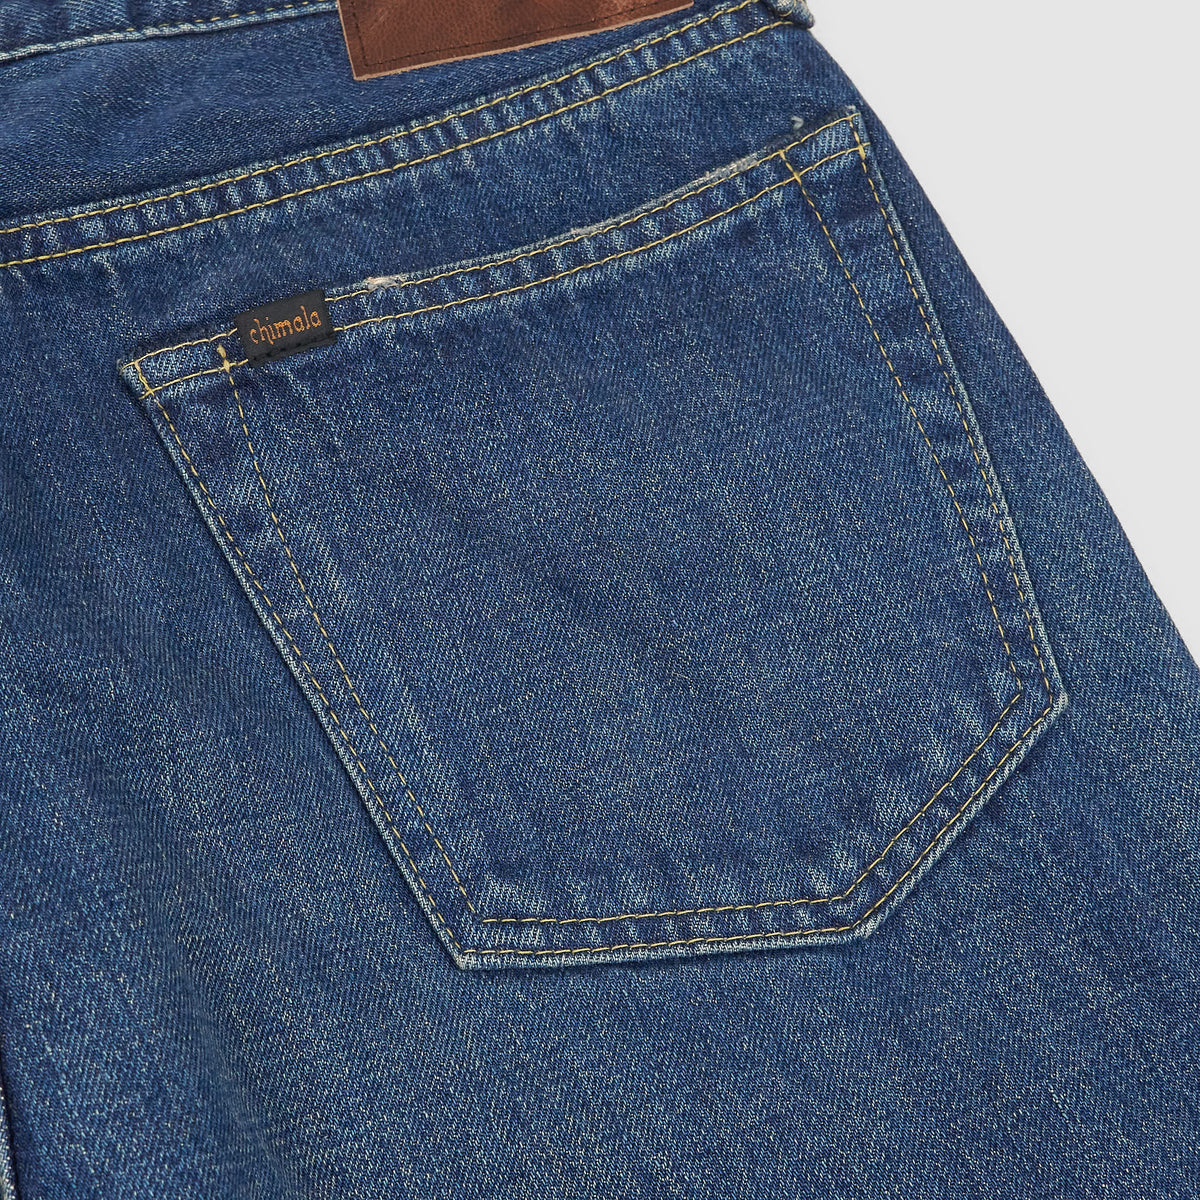 Chimala 5-Pocket Selvedge Straight Leg Unisex Jeans